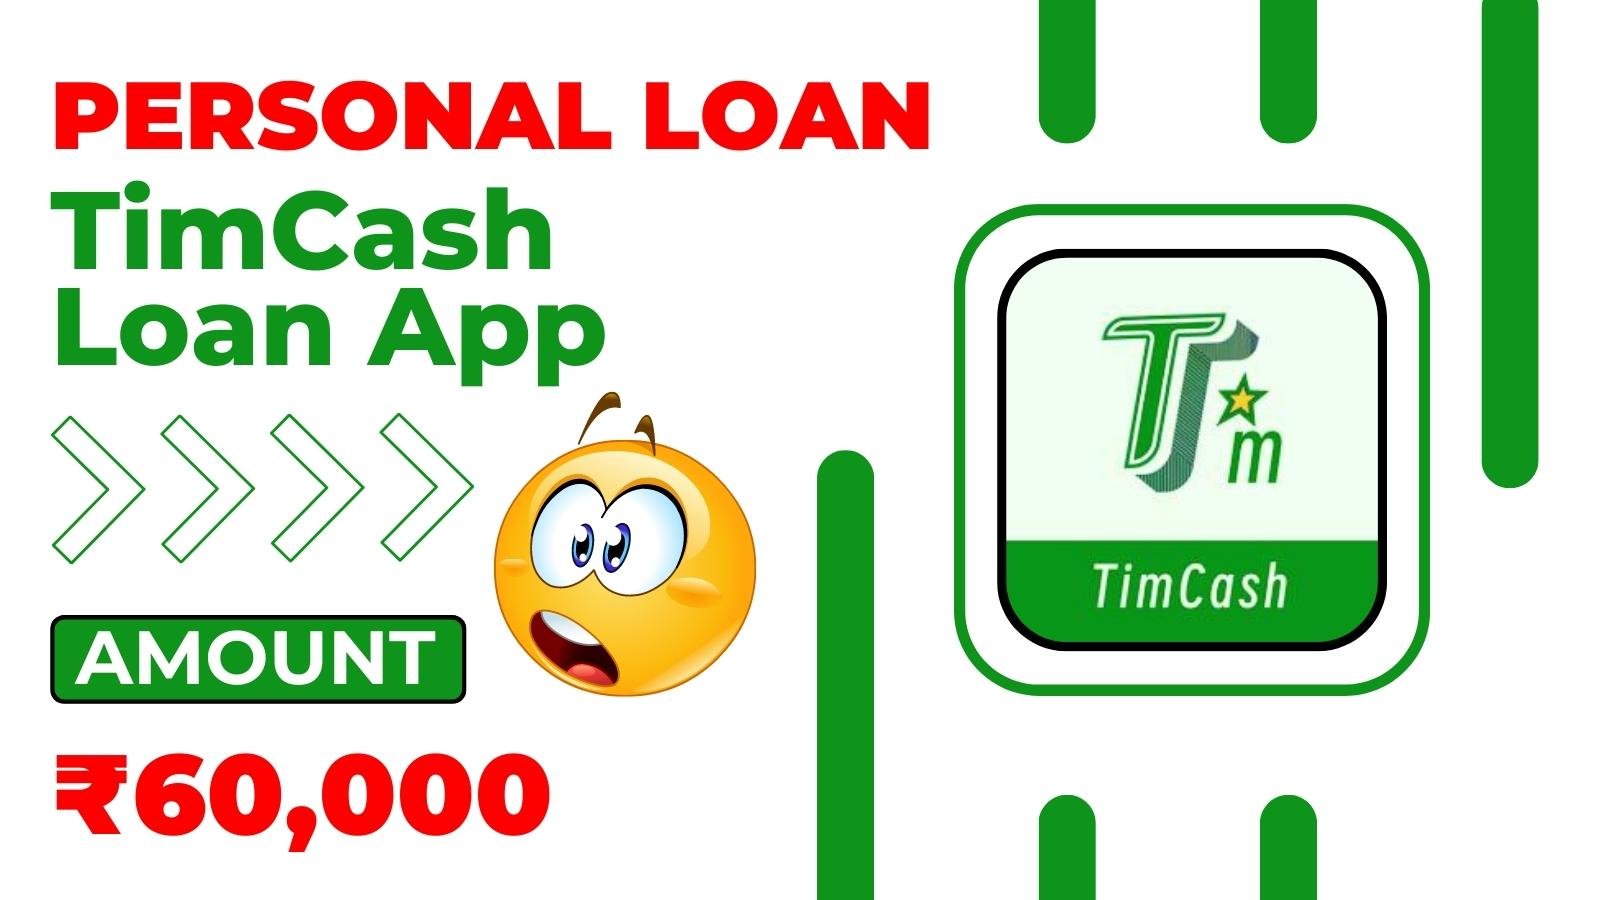 TimCash Loan App Loan Amount